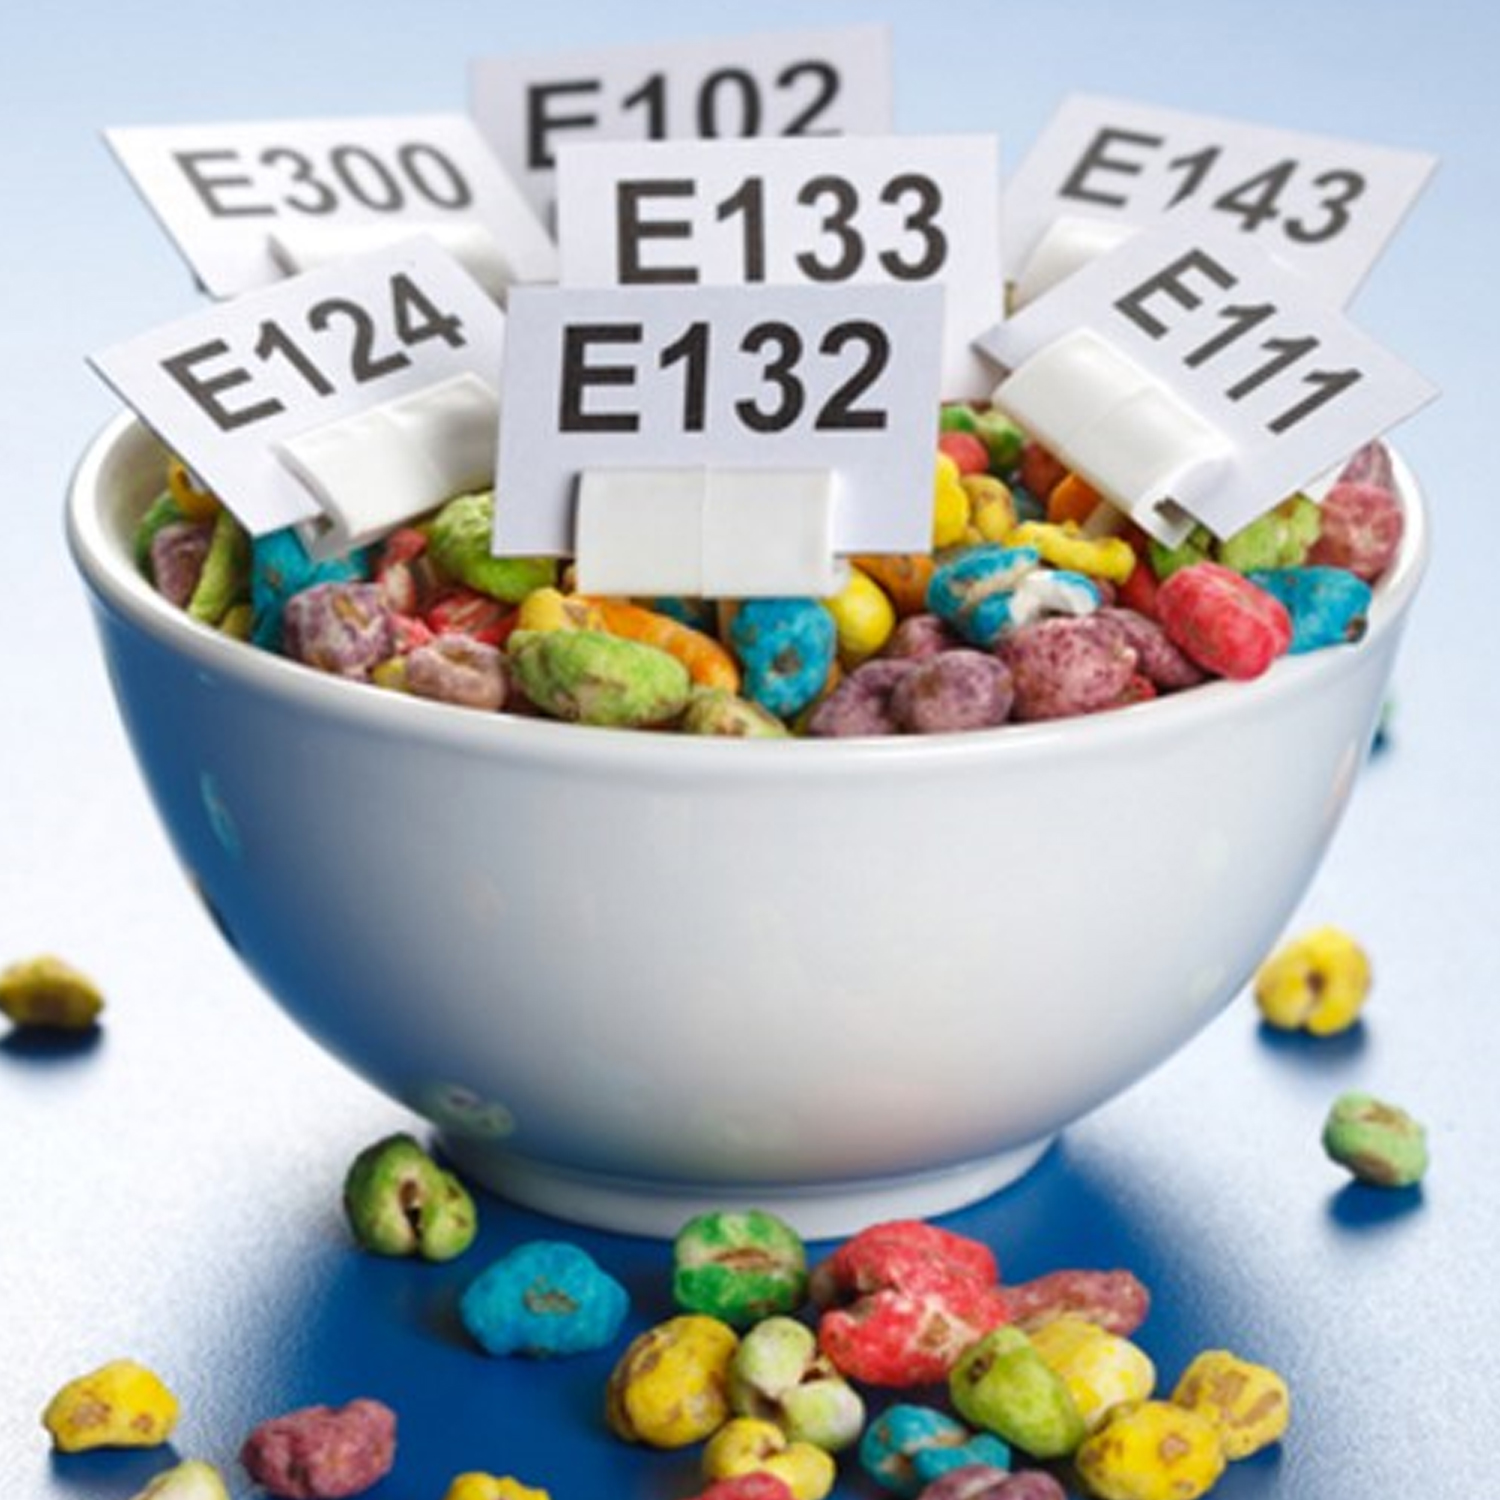 E171: диоксид титана больше не безопасен для пищевых продуктов